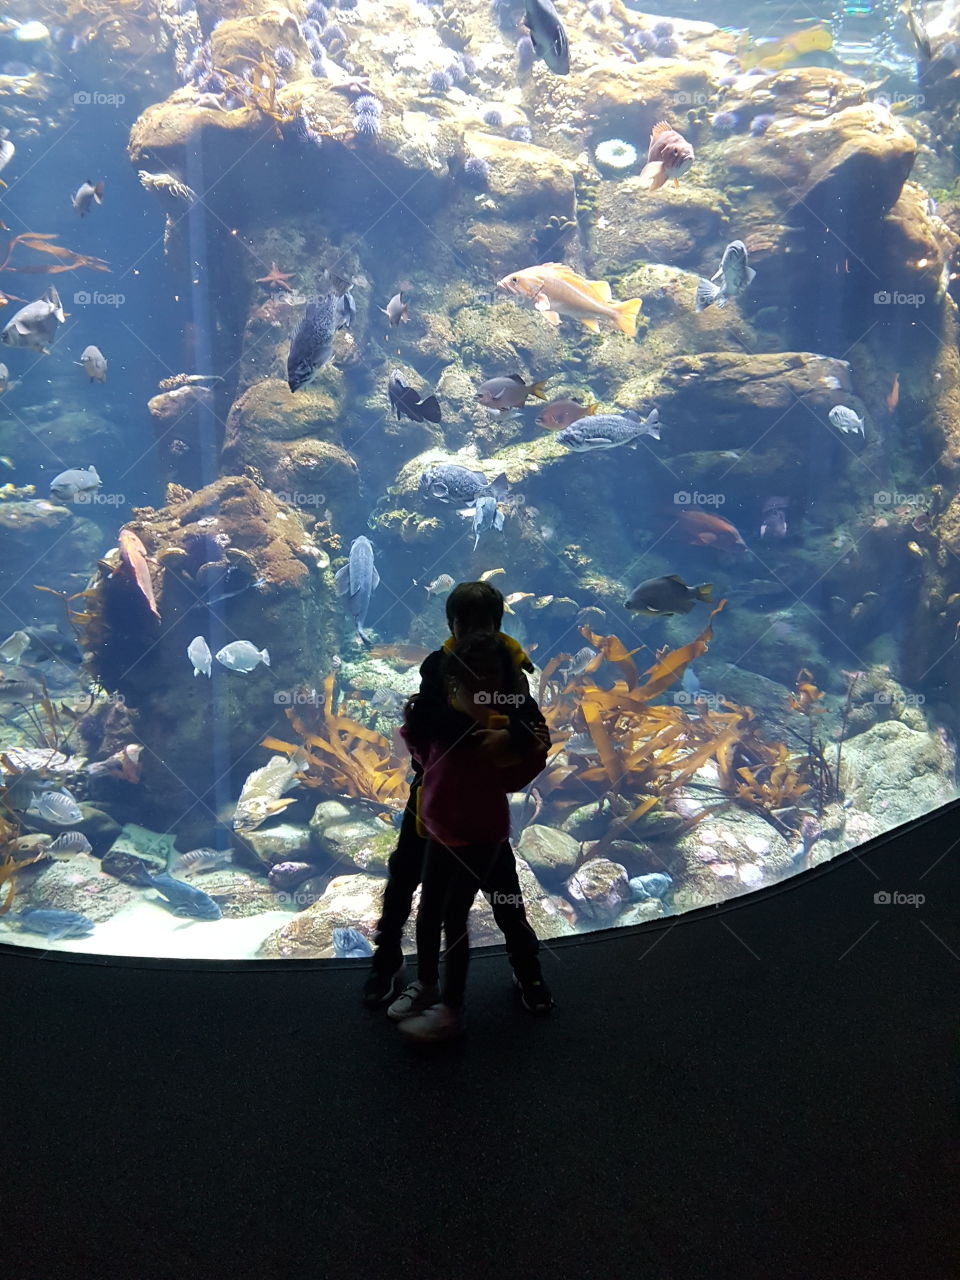 aquarium sillowet